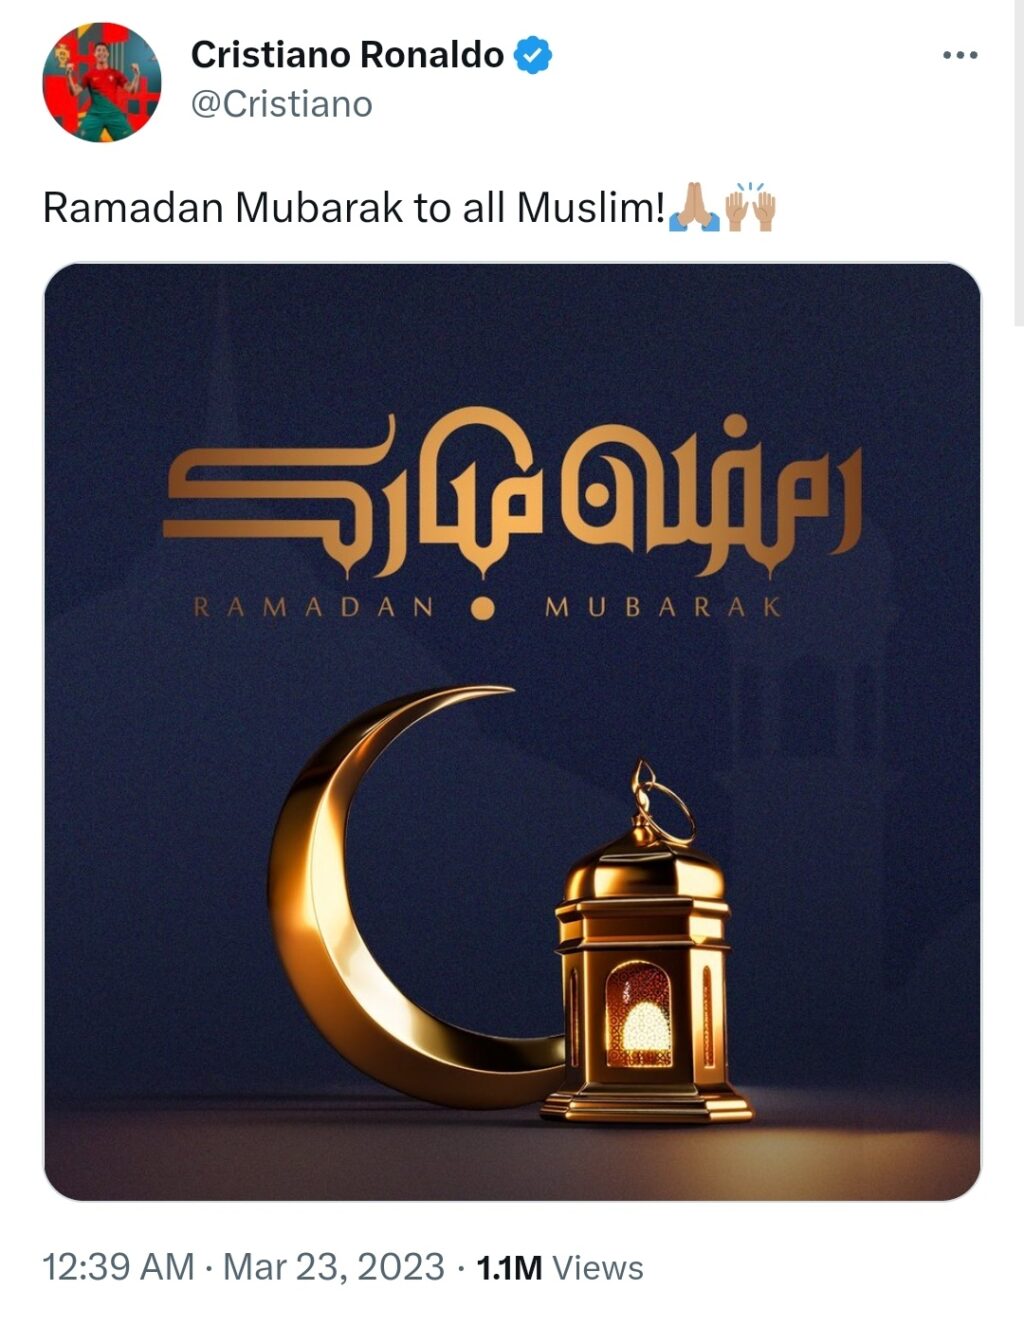 تبریک ماه رمضان از زبان رونالدو